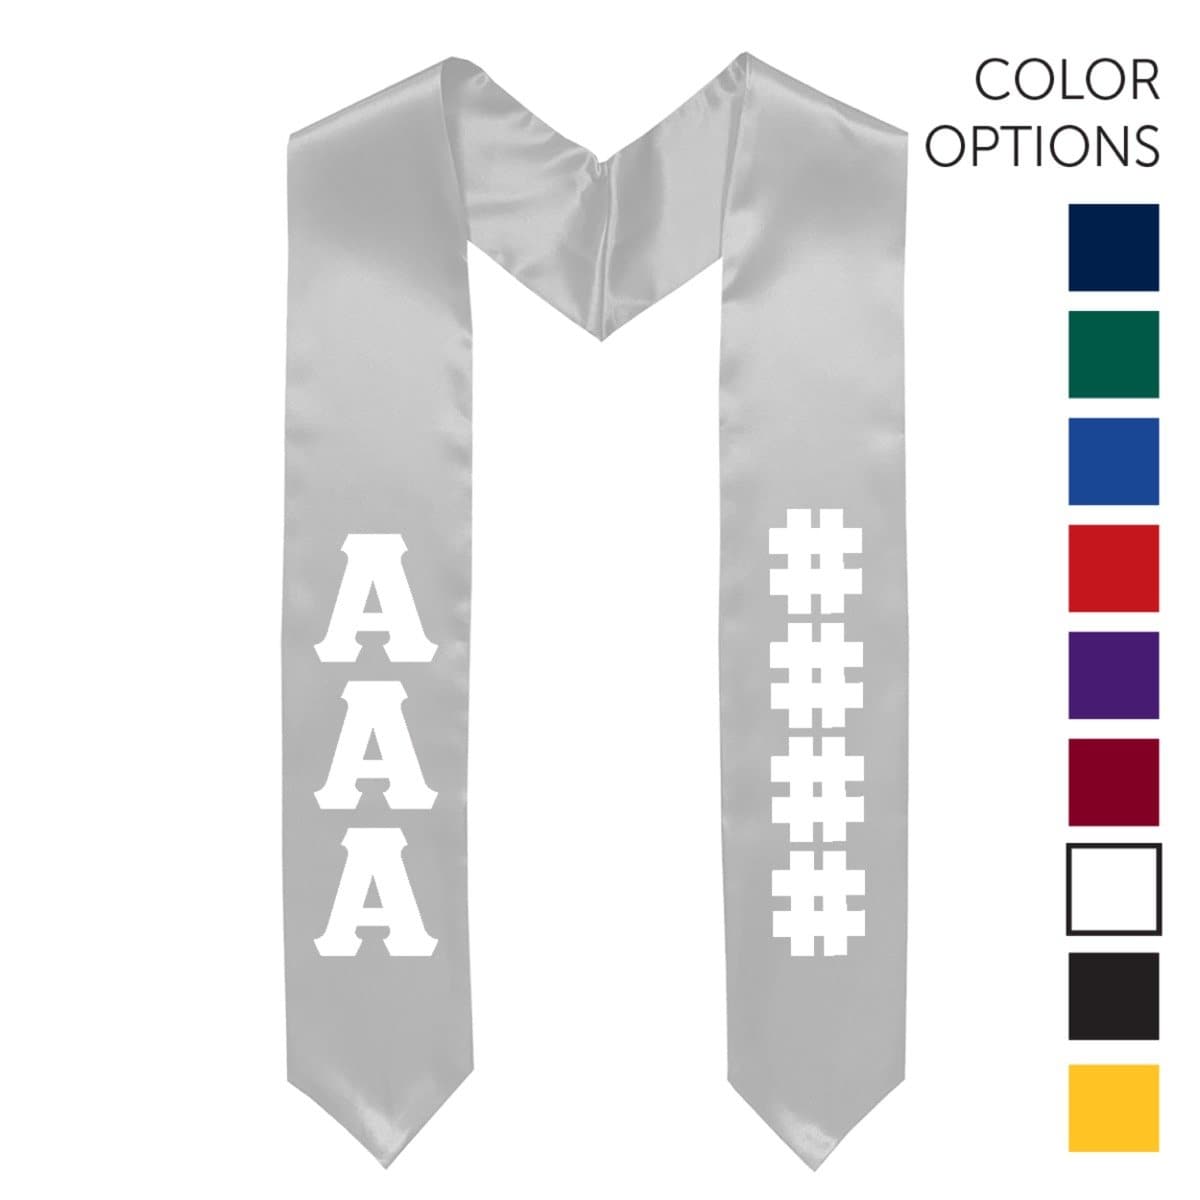 Zeta Pick Your Own Colors Graduation Stole | Zeta Tau Alpha | Apparel > Stoles